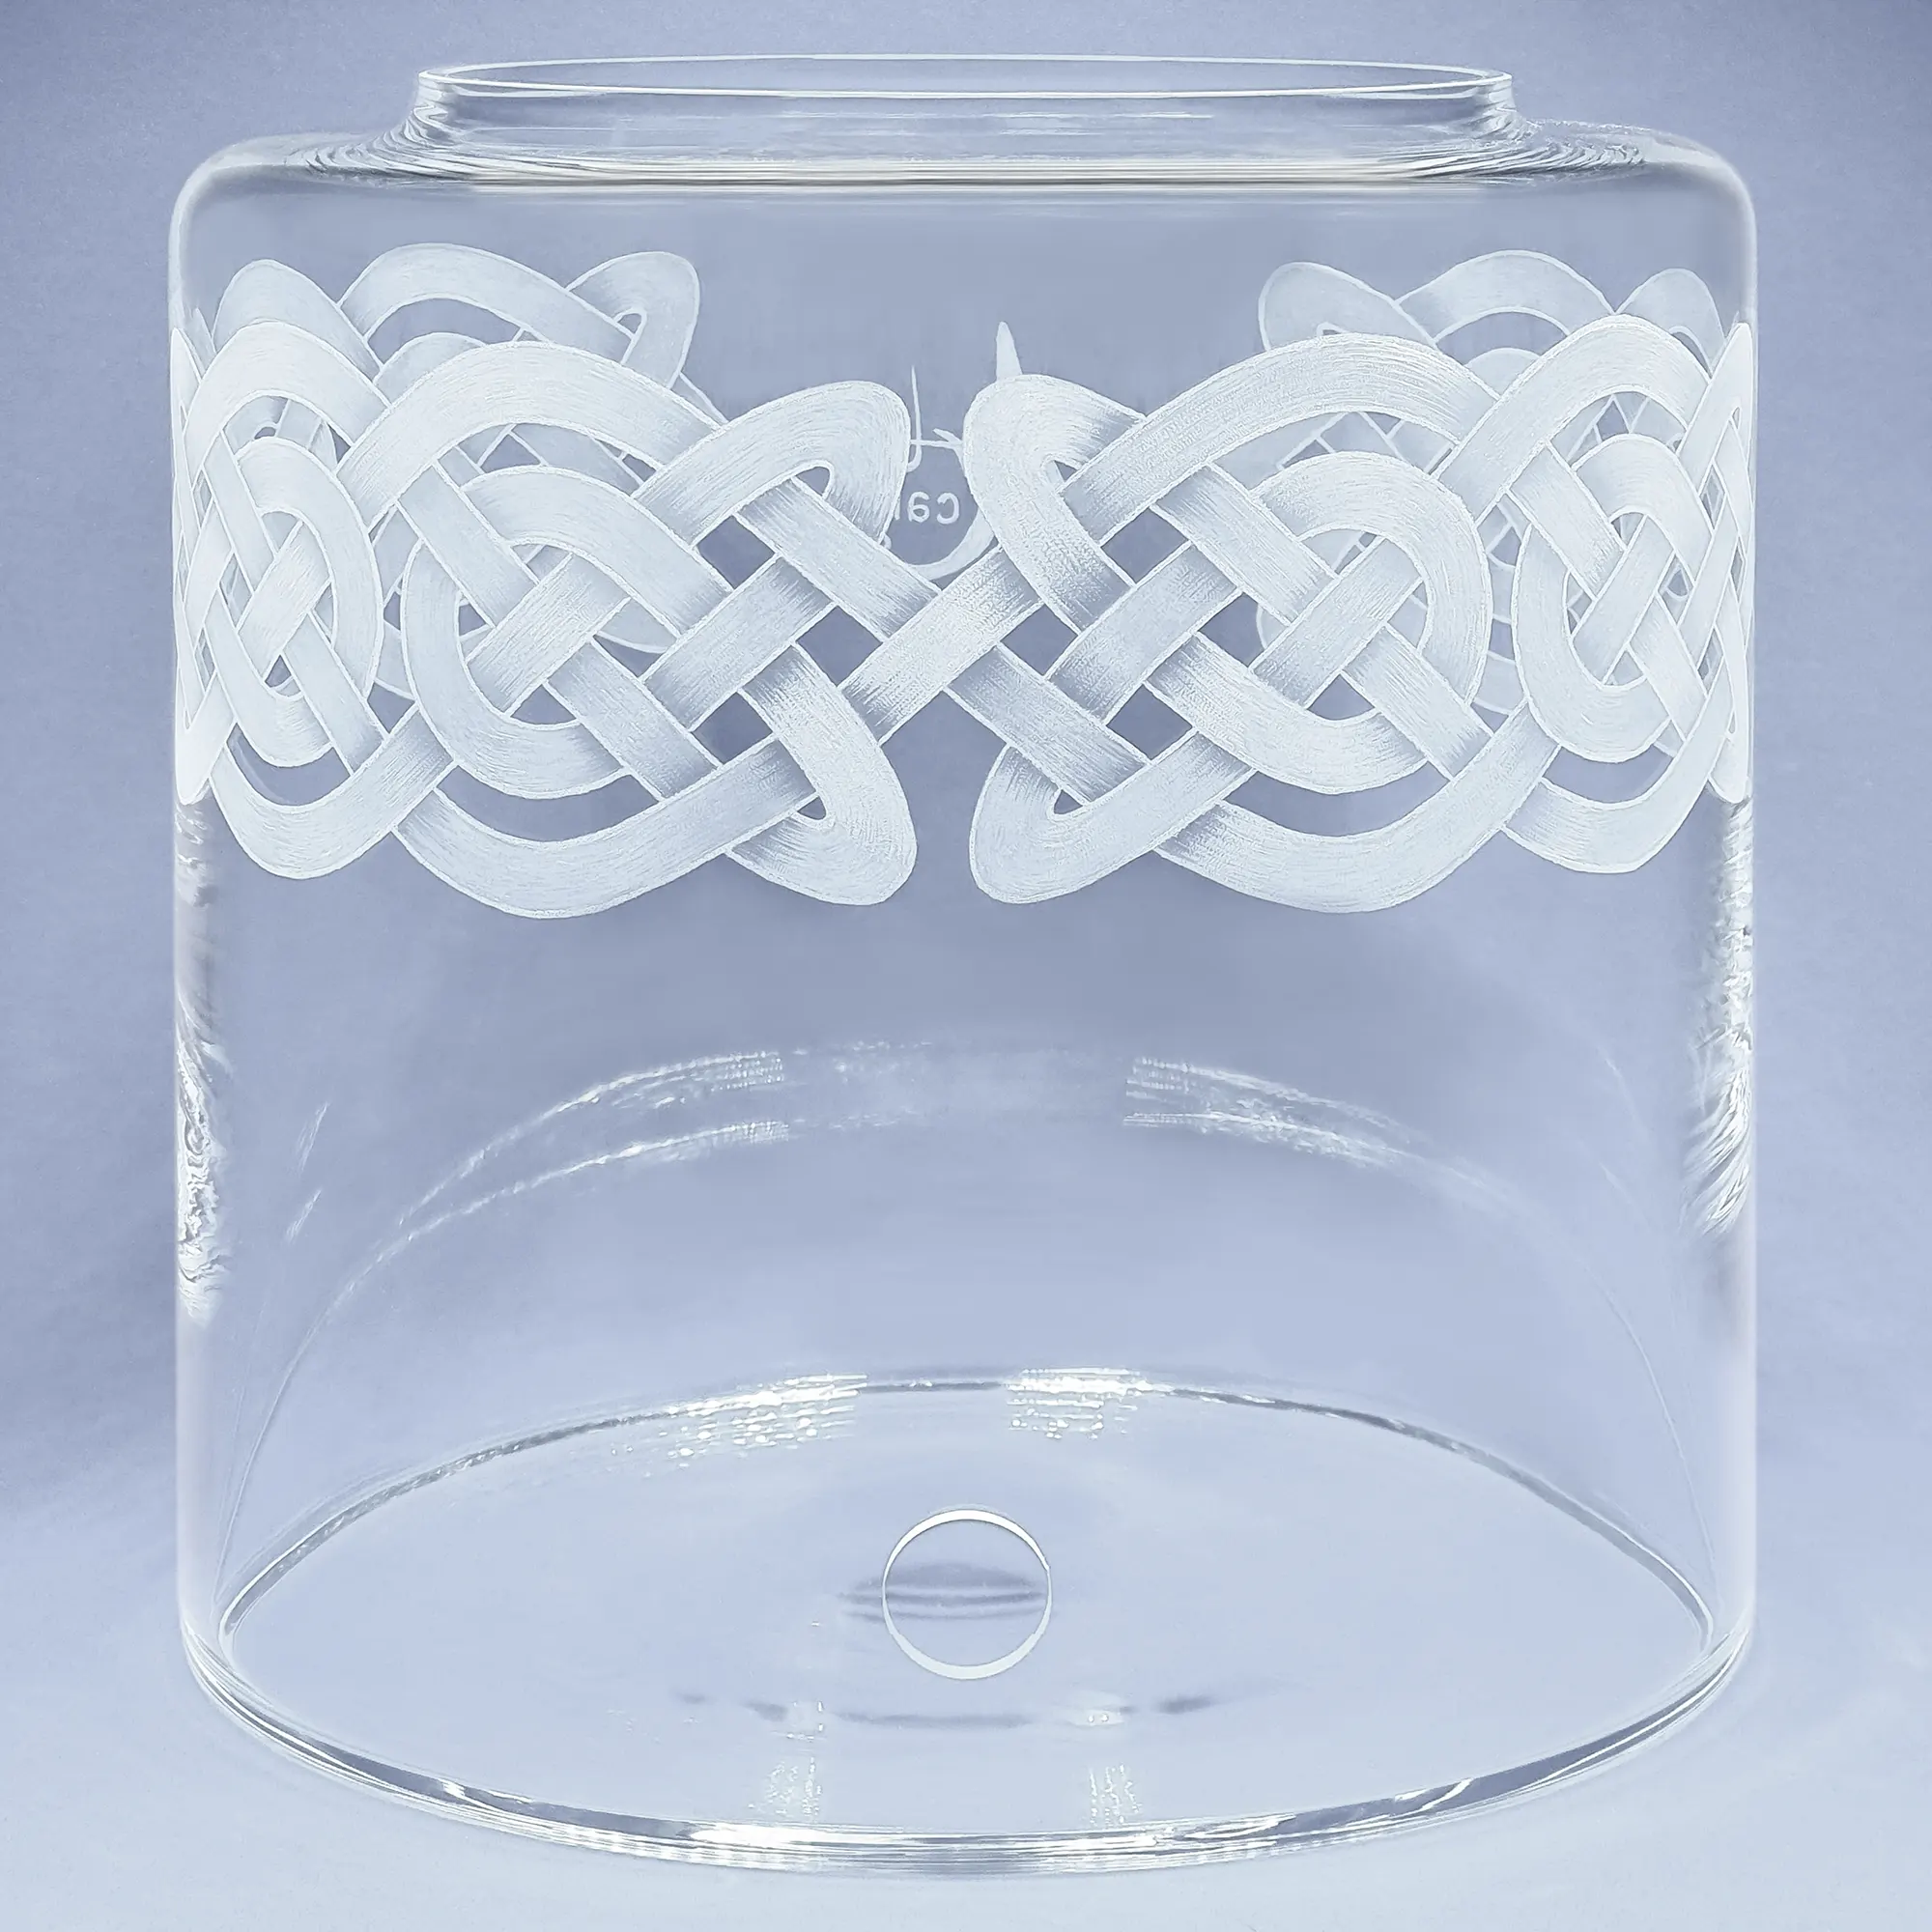 Ein 8Liter Acala Wasserfilter in klarem Glas mit einem umlaufenden Muster aus Knoten,am oberen Rand des runden Glases. Vorderansicht.